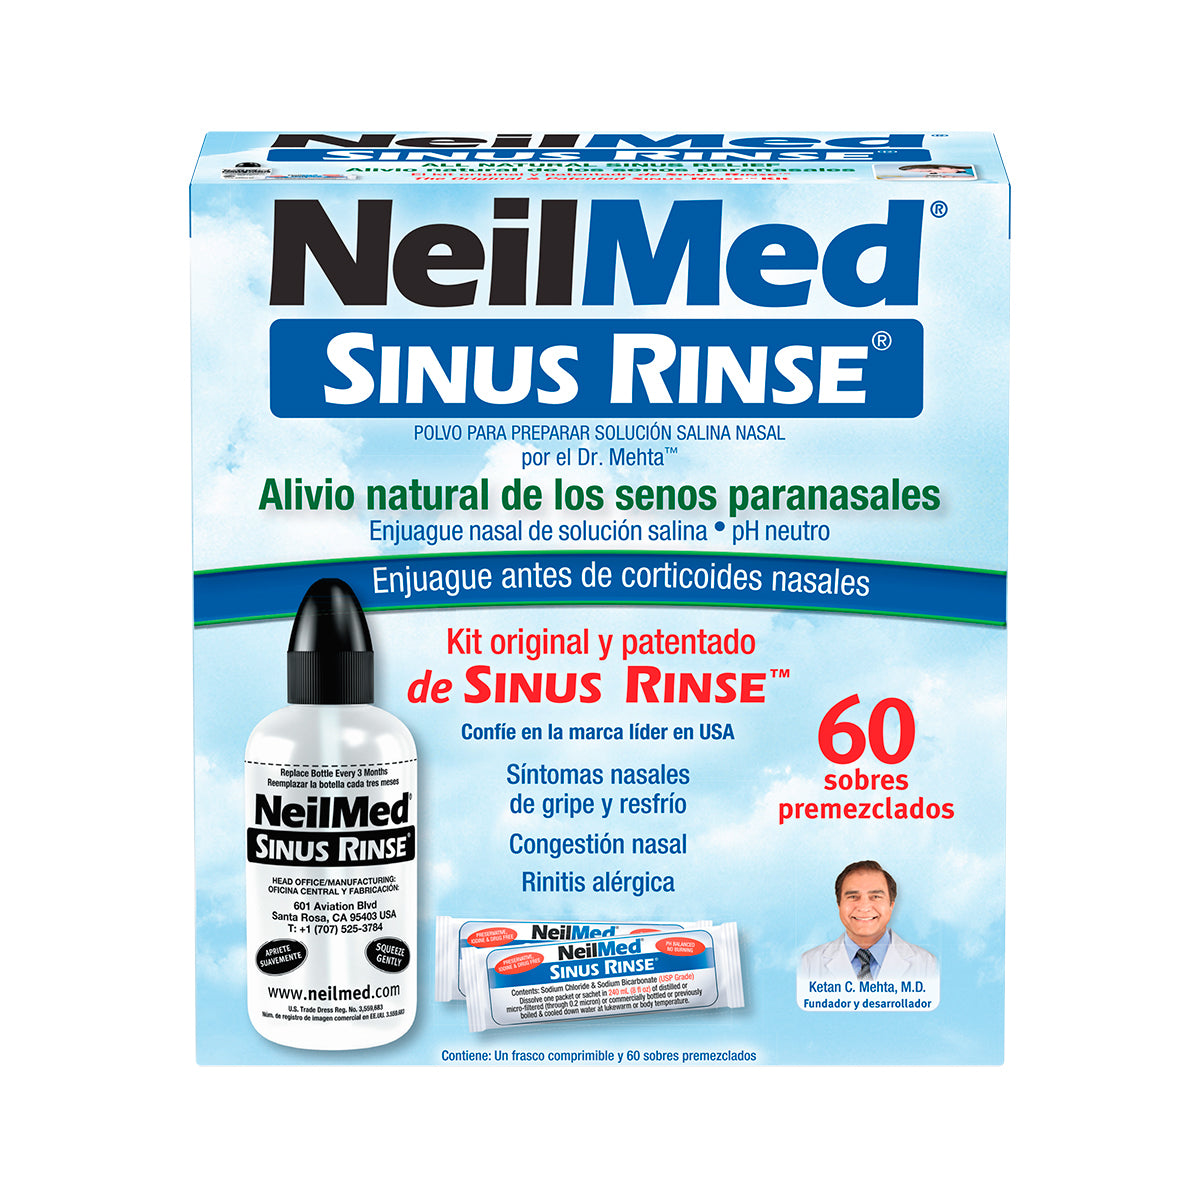 NEILMED SINUS RINSE 60 SOBRES